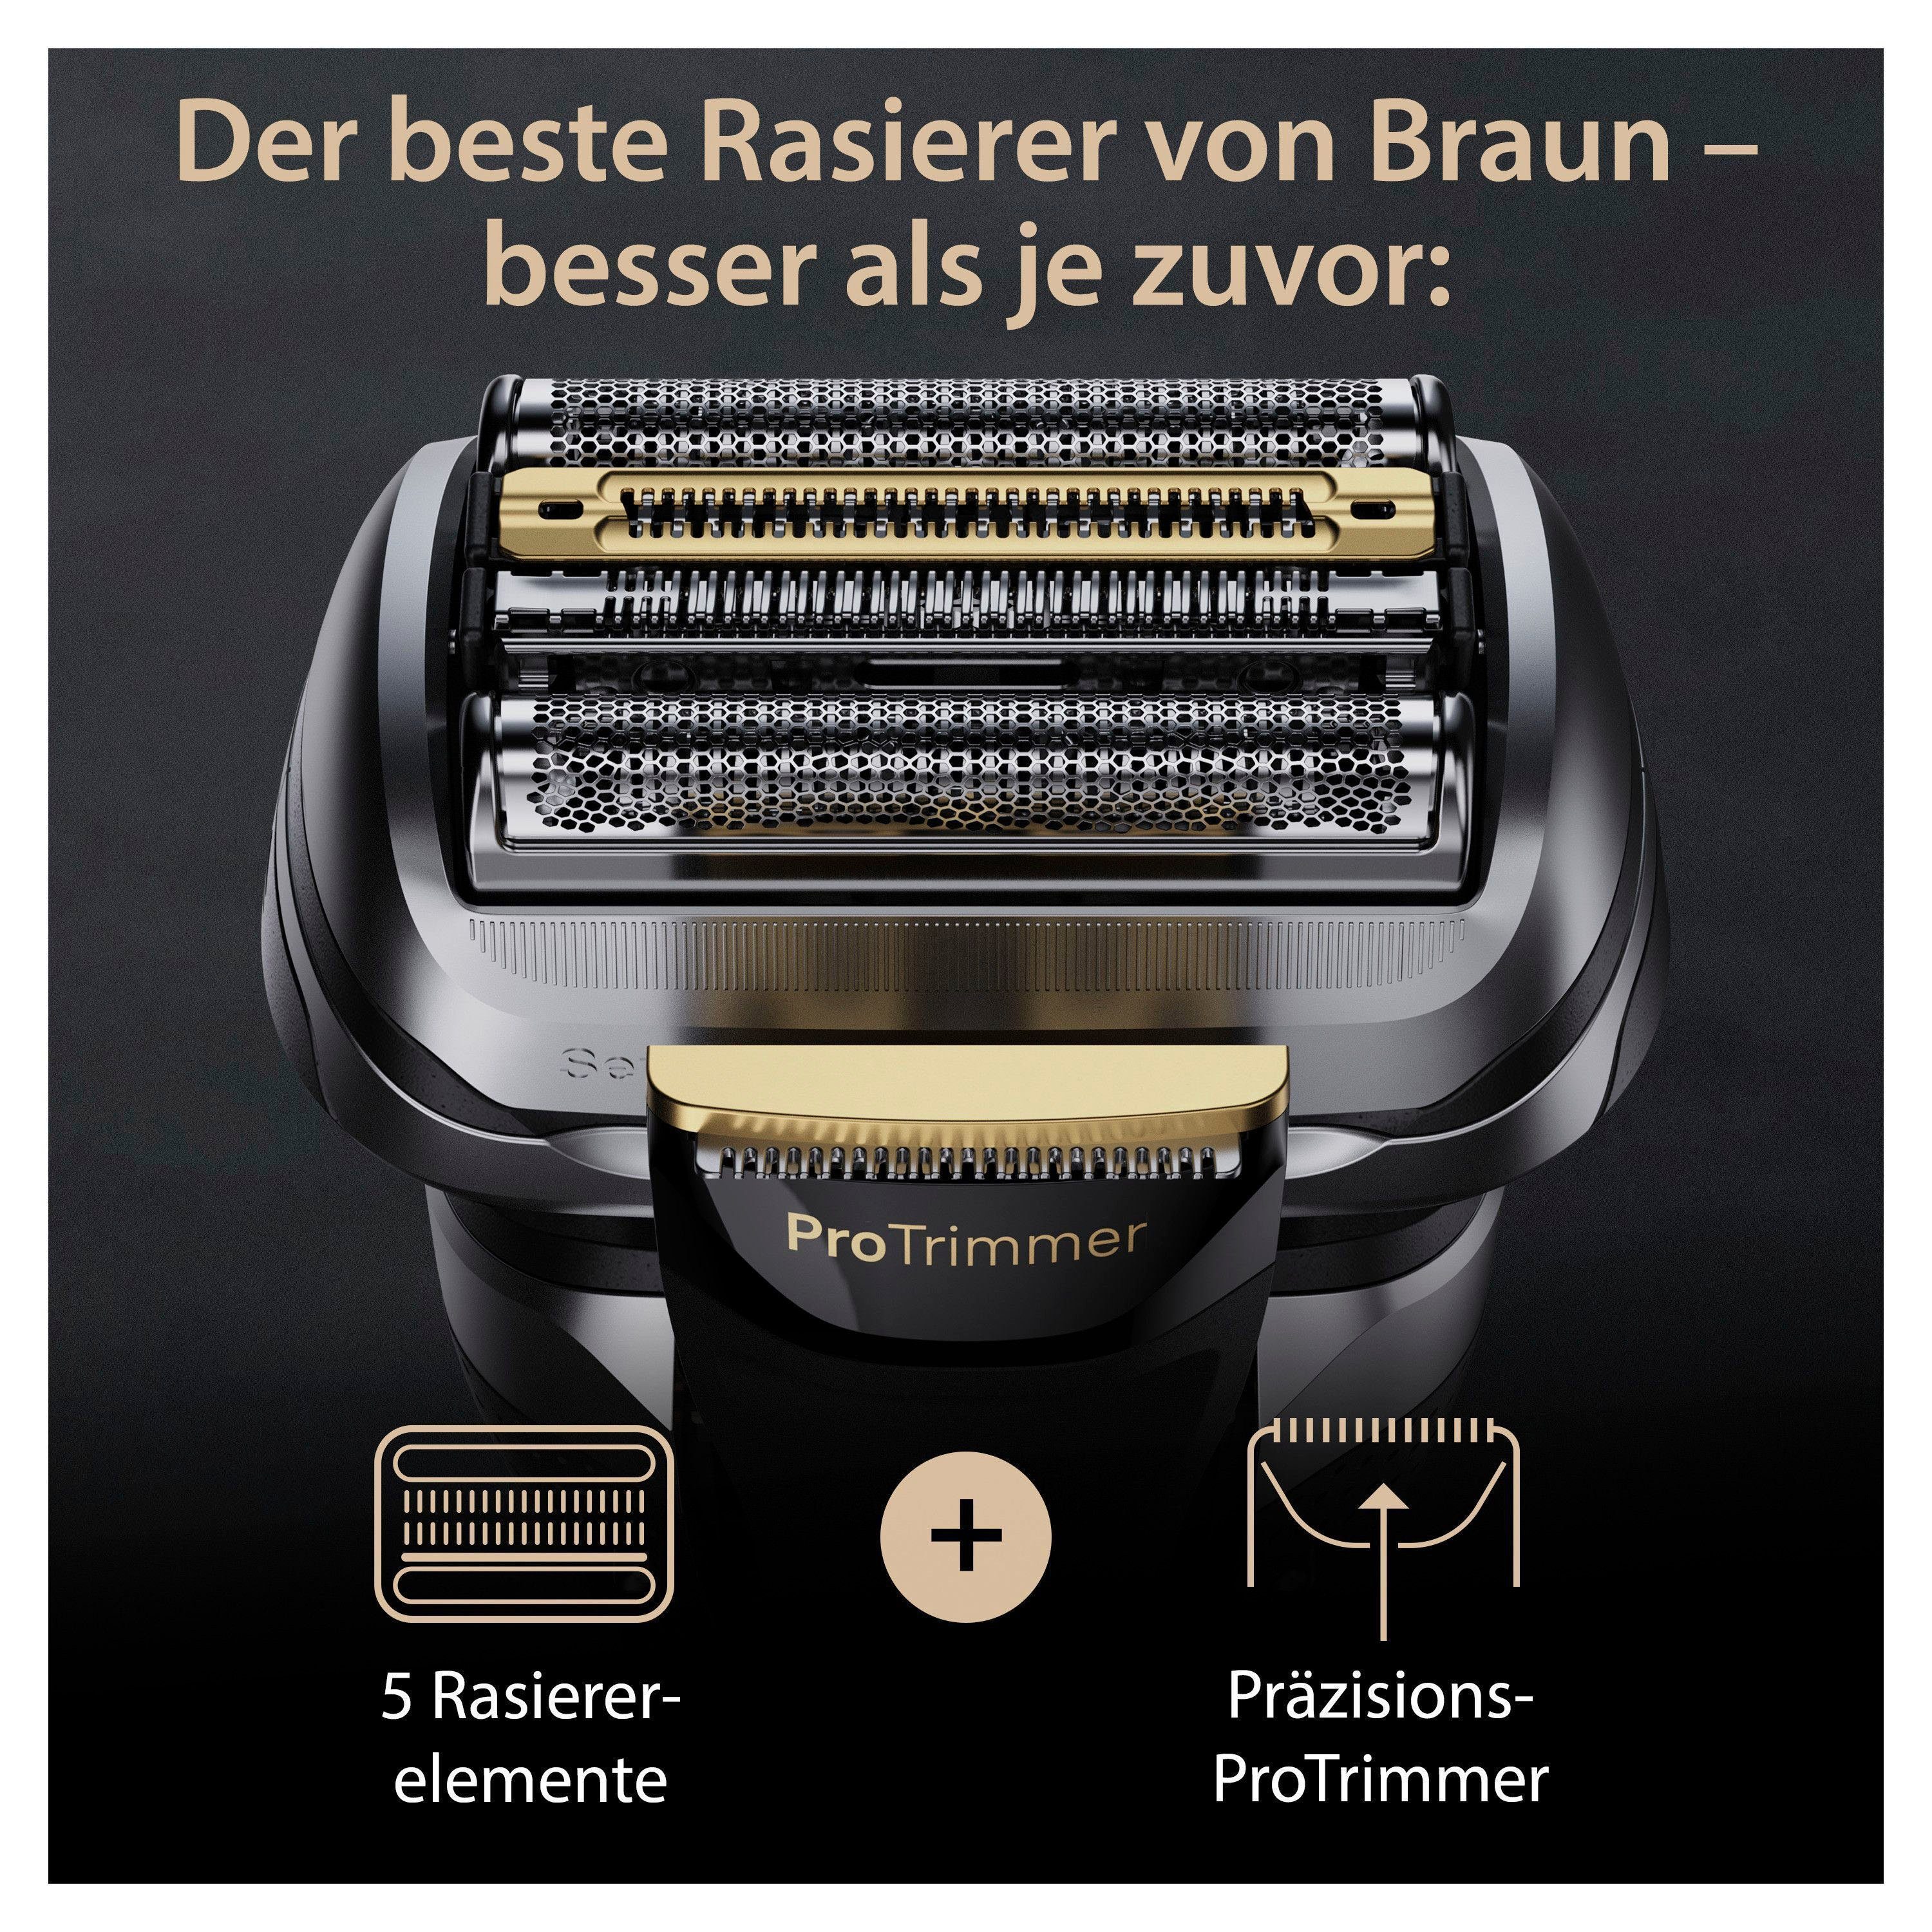 Precision Elektrorasierer 9 Braun ProTrimmer Reinigungsstation, Pro+ Series 9567cc,